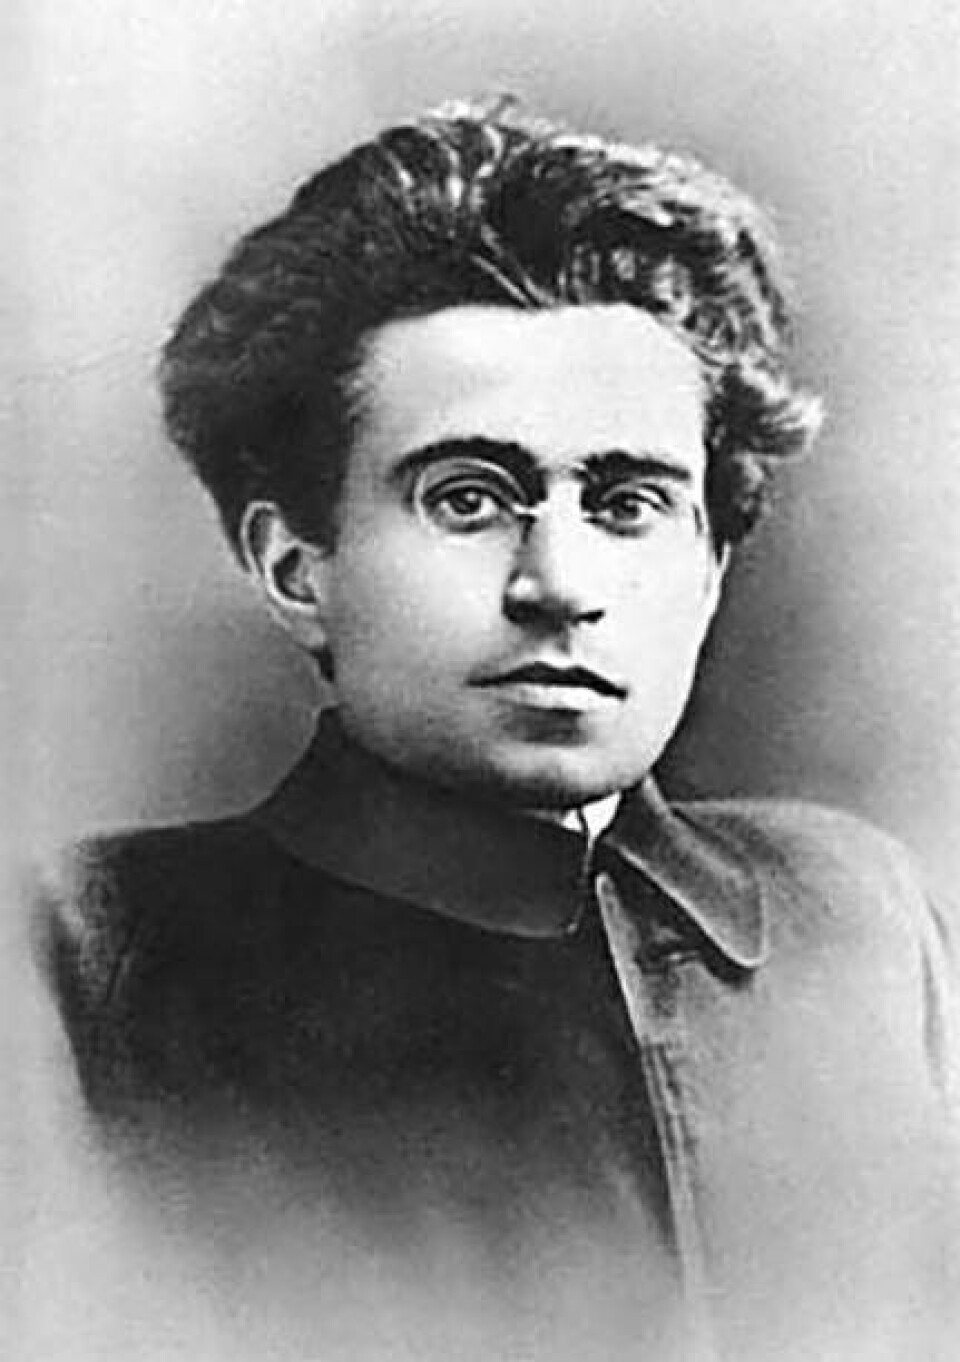 Antonio Gramsci (1891–1937) var filosofen bakom begreppet ”kulturmarxism”. Gramscis taktik för samhällsförändring var en långsam och grundlig process, där revolutionära idéer gradvis tog över människors tankar. Foto: Wikimedia